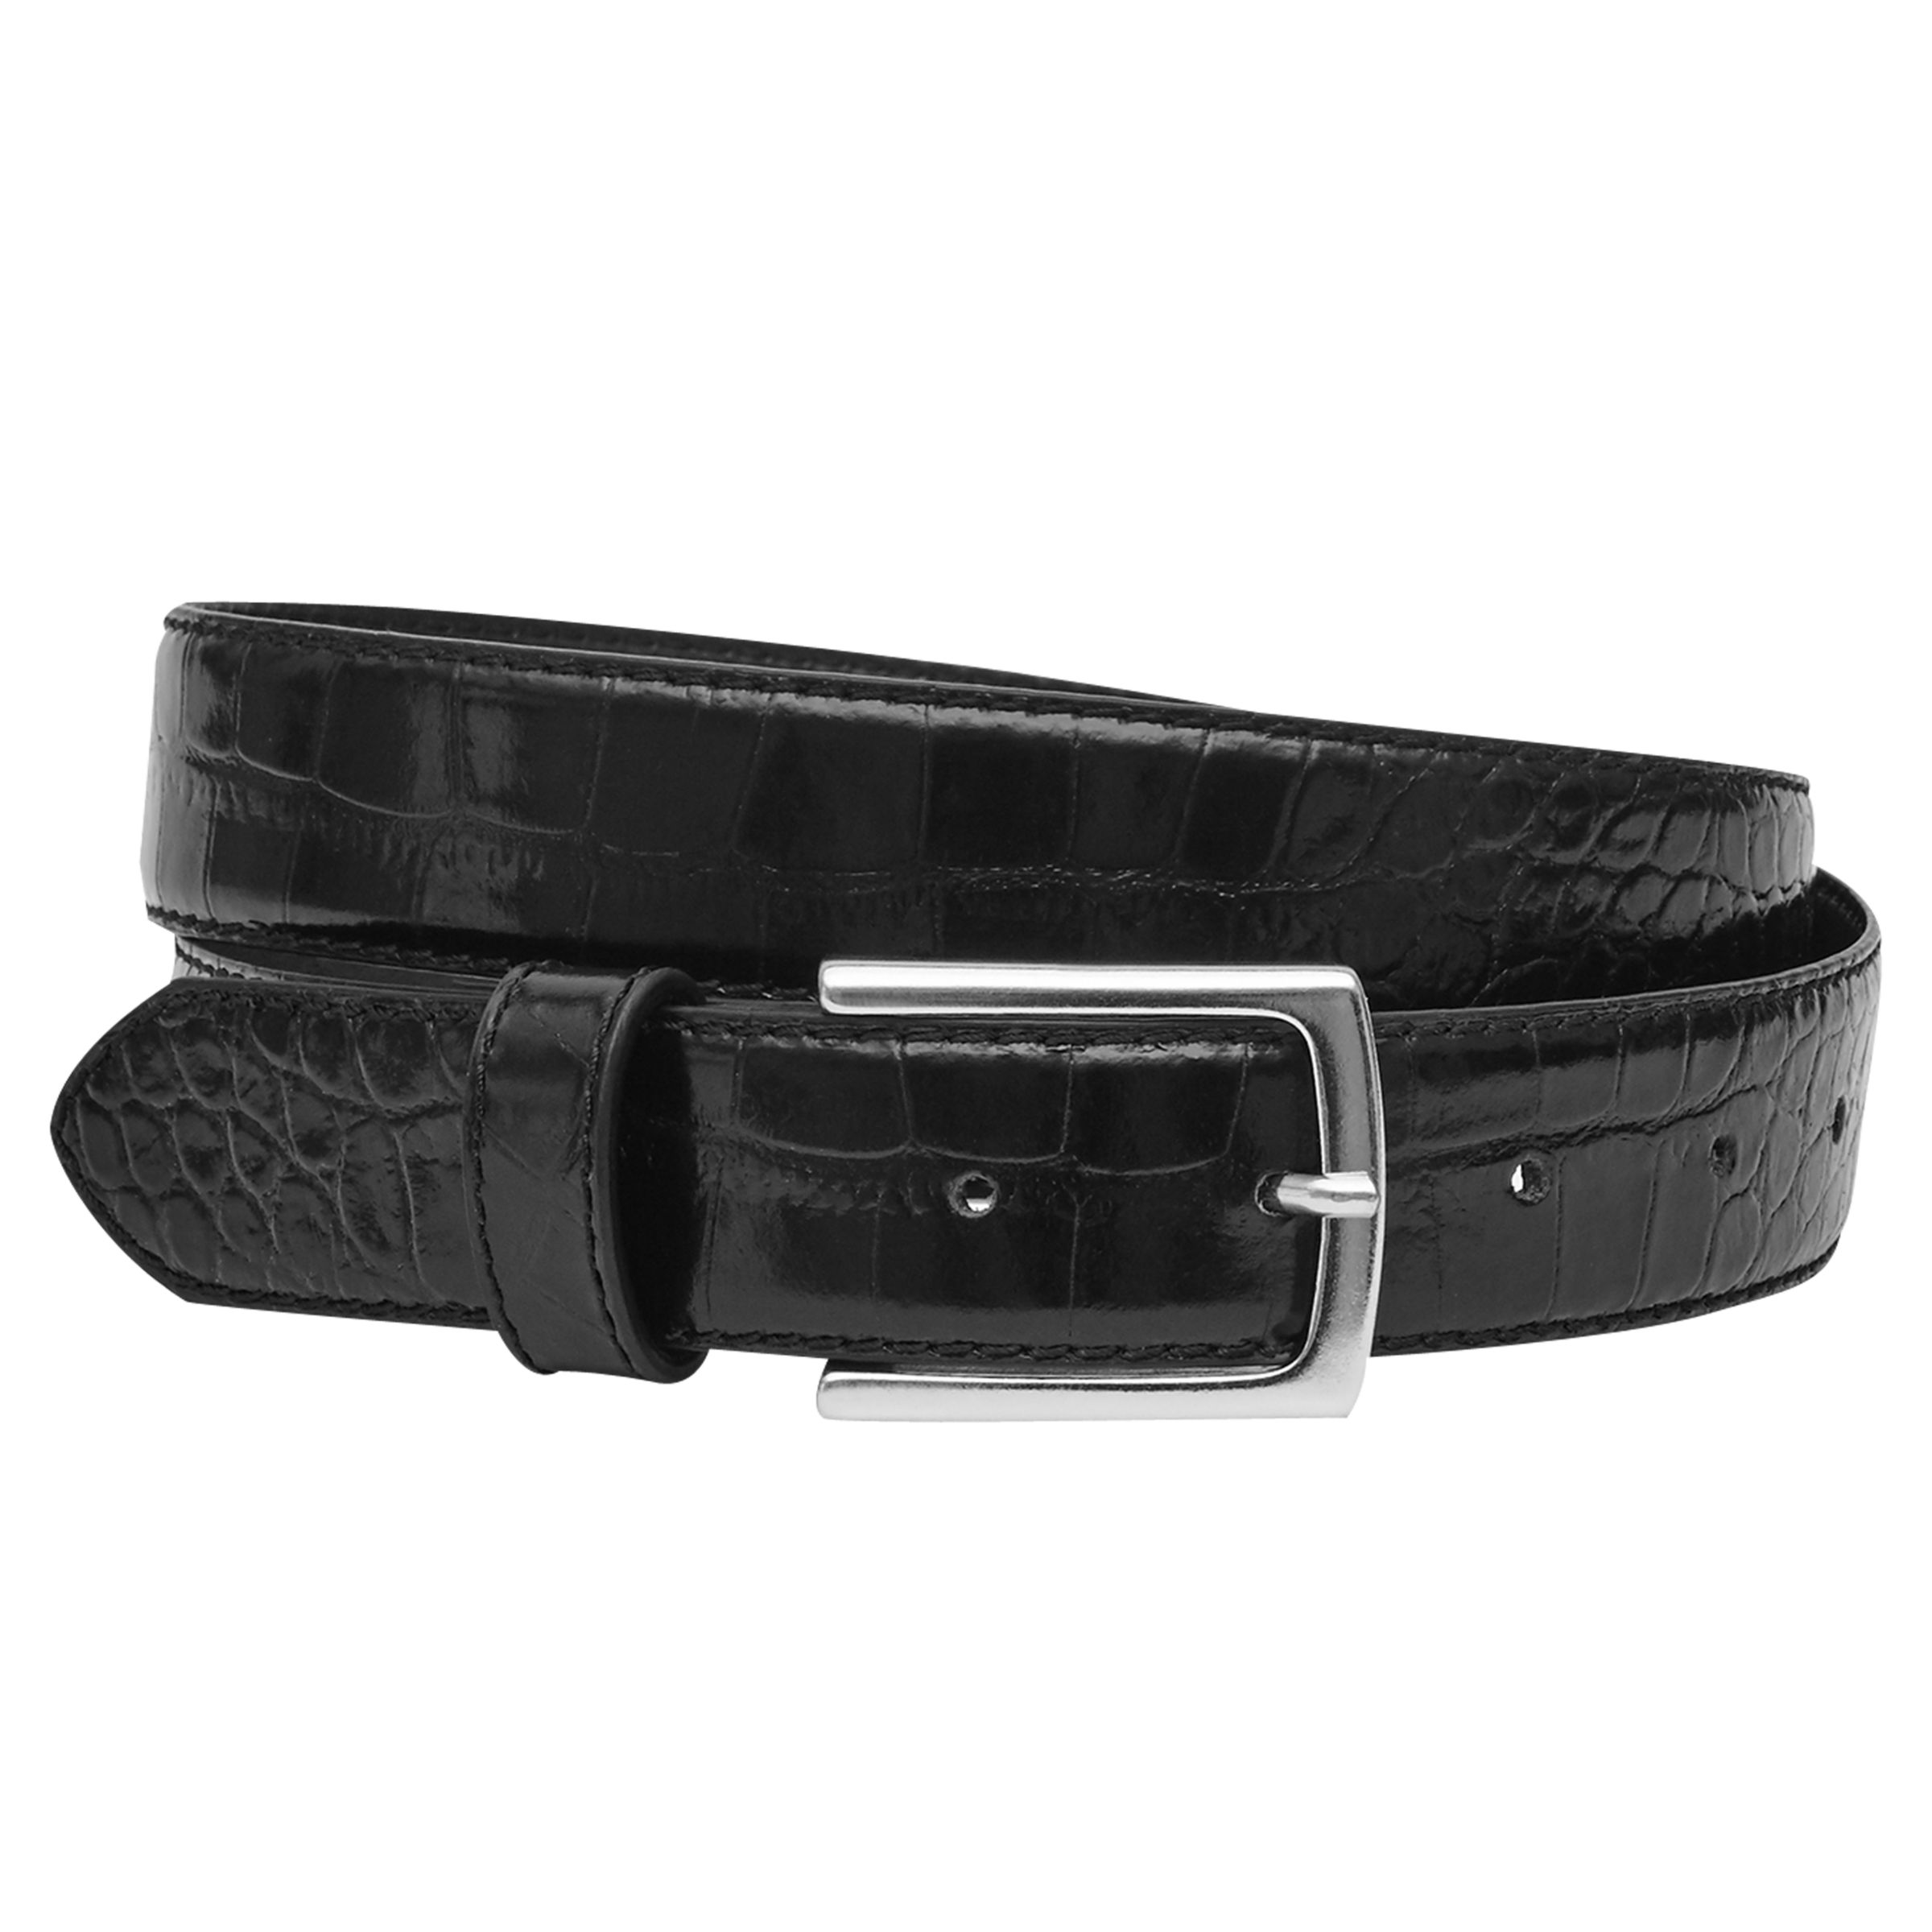 Reiss Roller Croc-Patterned Belt, Black, 36